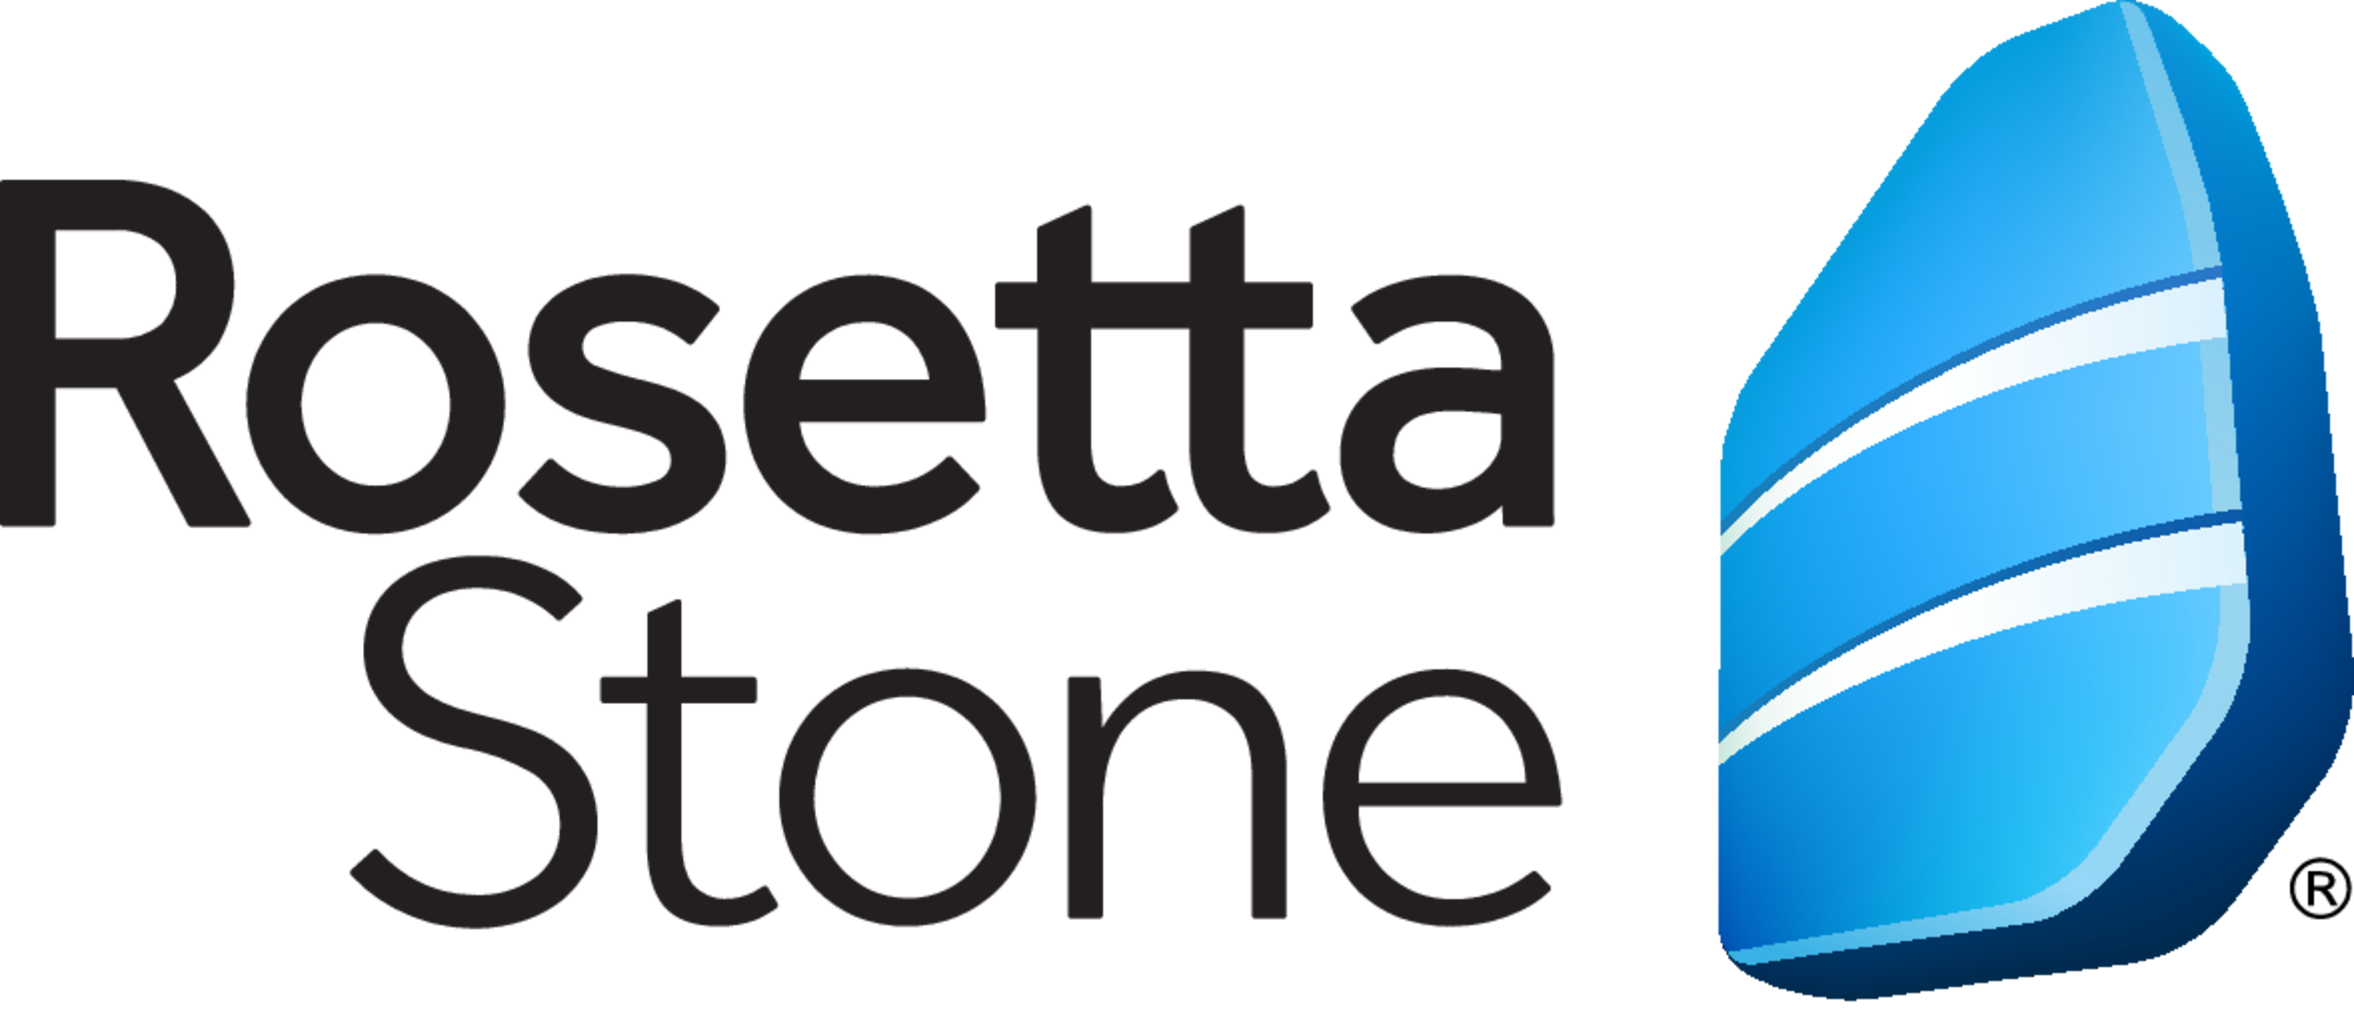 Rosettastone.com_coupons